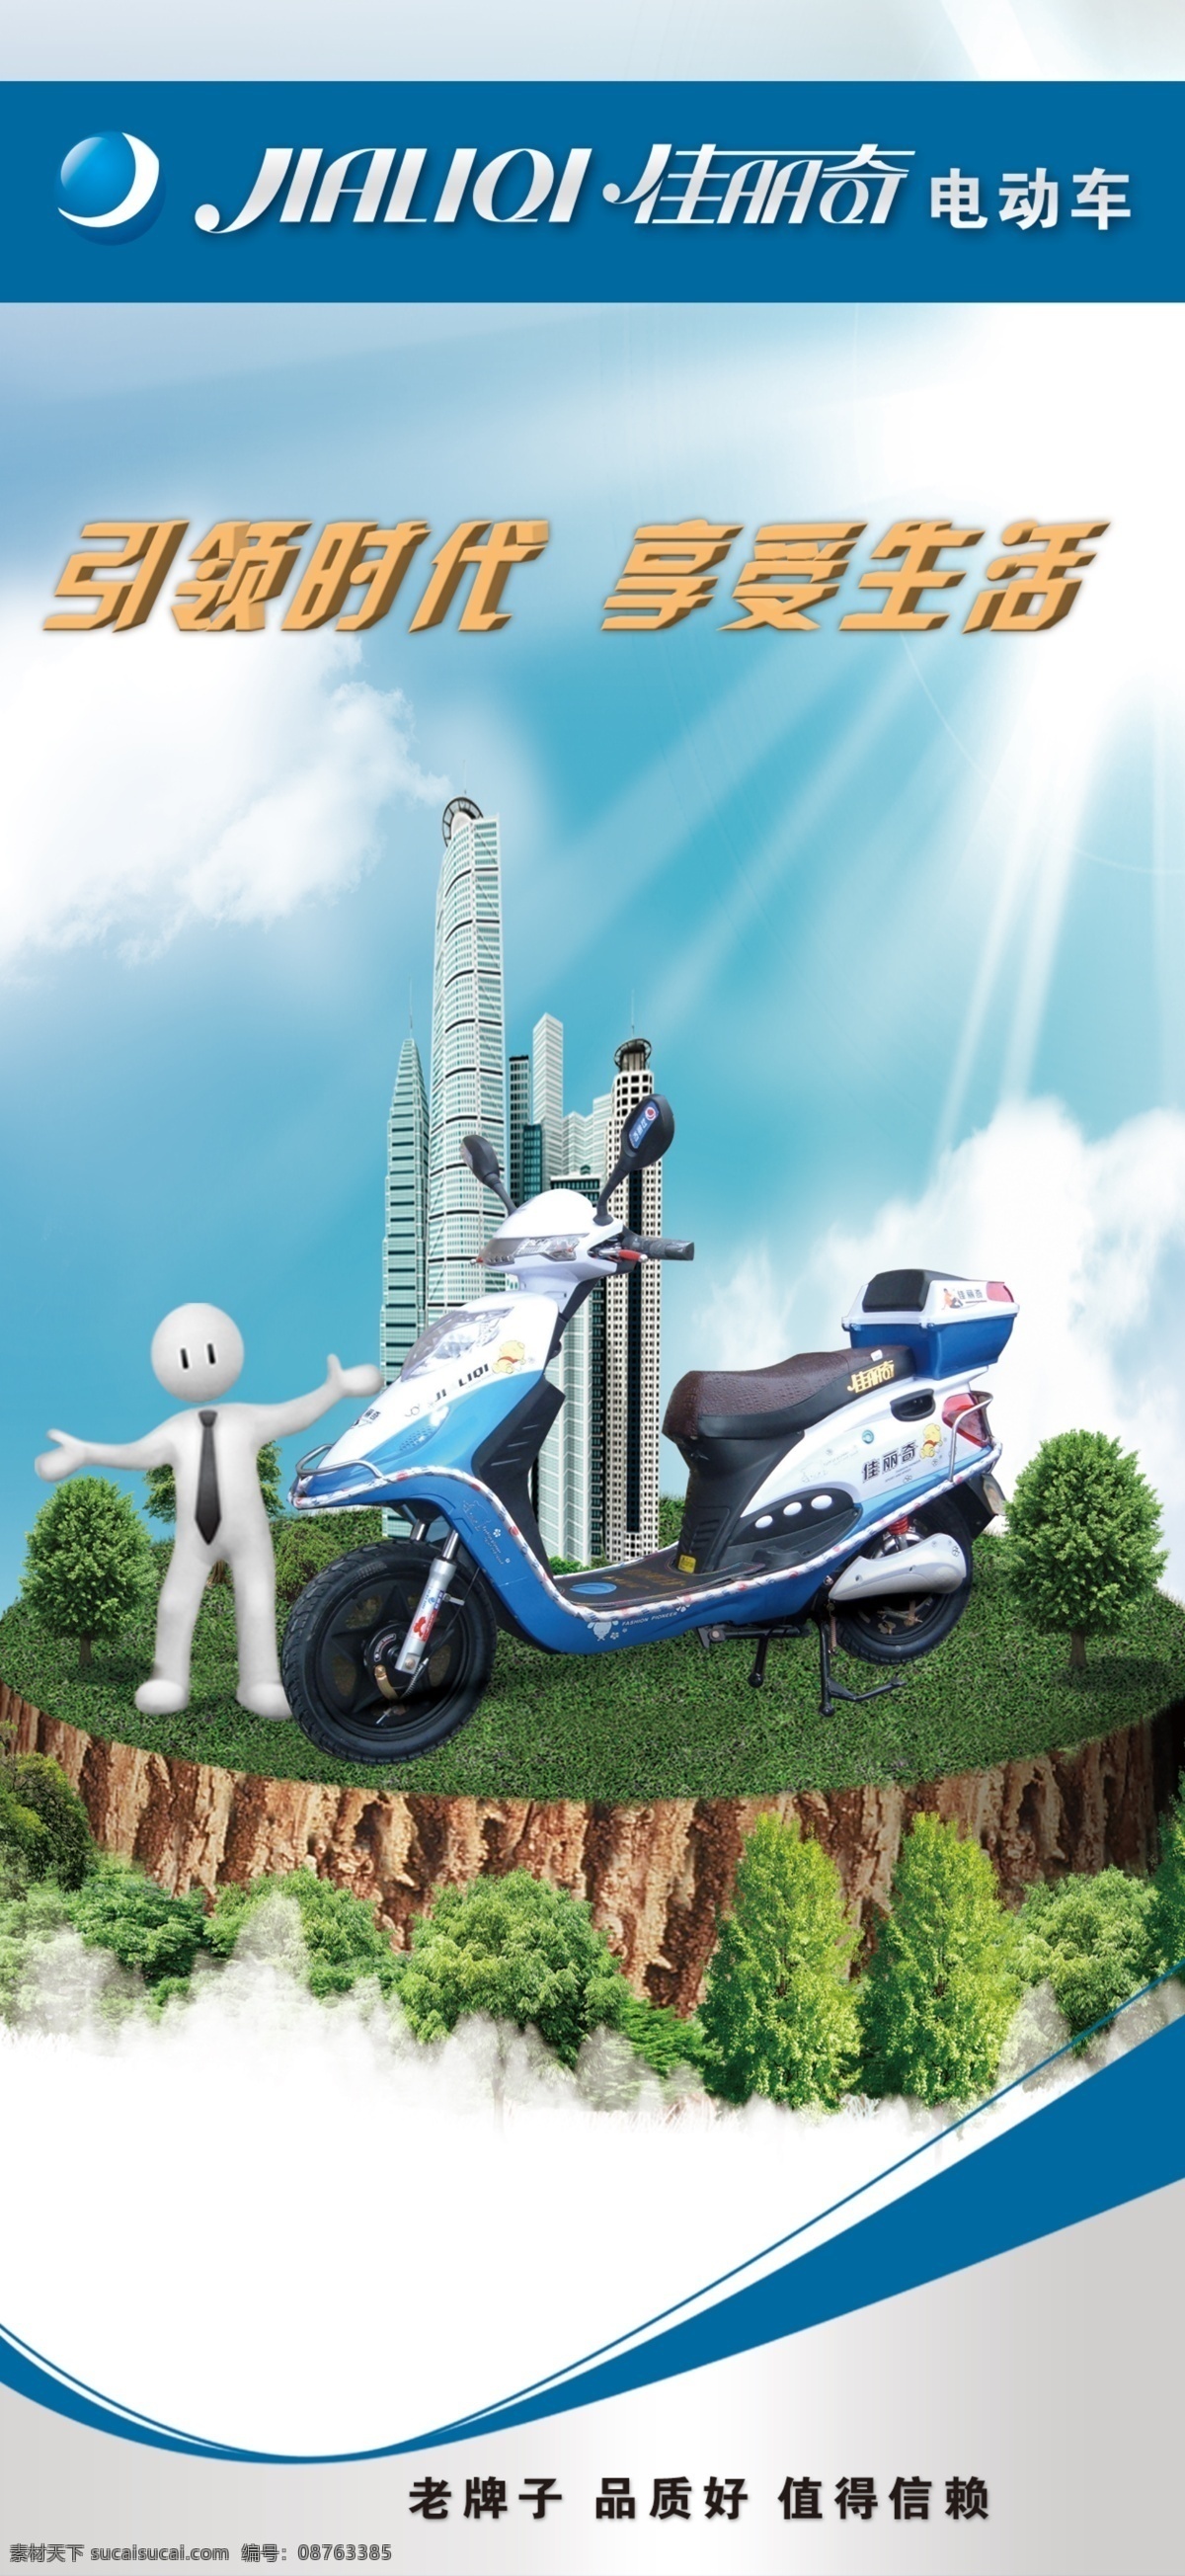 佳丽 奇 电动车 3d小人 白云 背景 广告设计模板 名牌 源文件 佳丽奇电动车 佳丽奇 杭州市 海报背景图